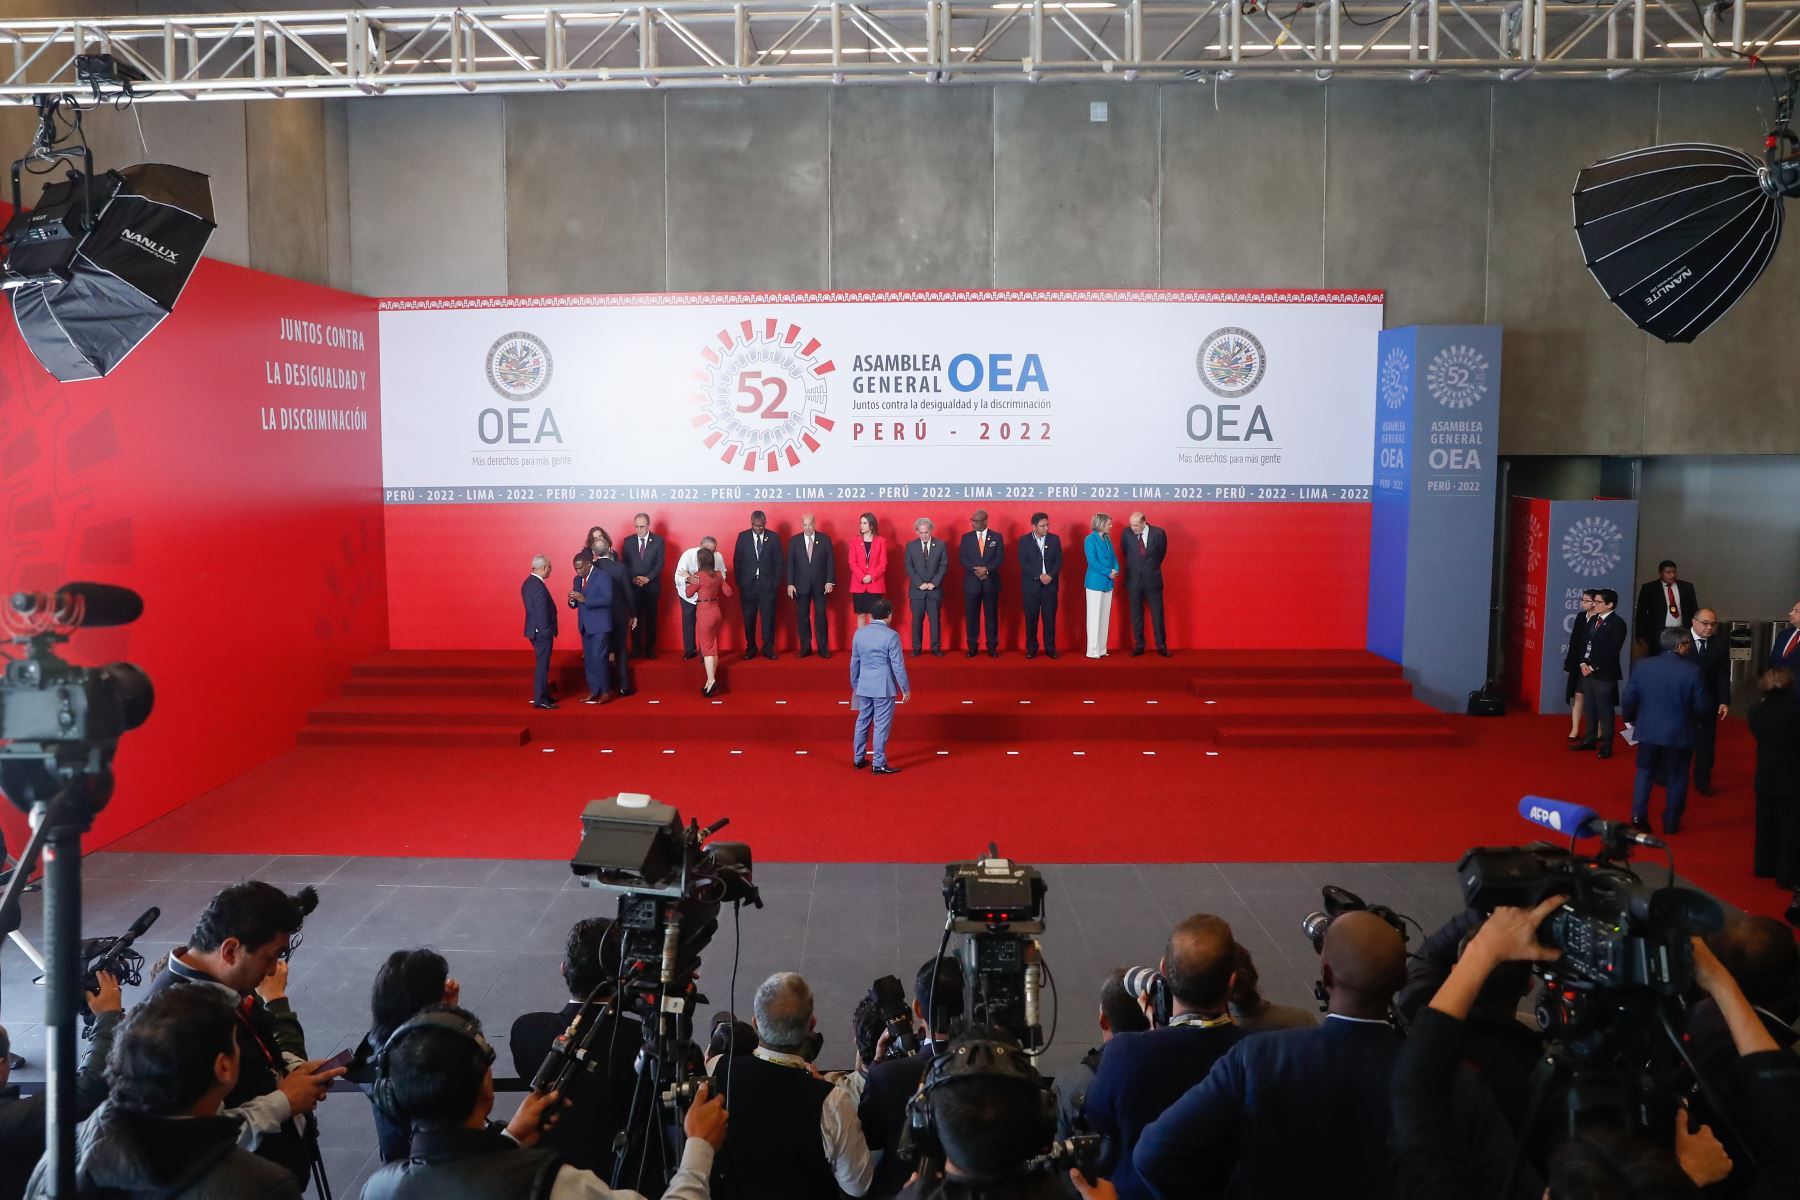 Los miembros de los países integrantes de la OEA, posan para la fotografía oficial, que se realizó en la explanada del Centro de Convenciones de Lima. 

Foto: ANDINA/Renato Pajuelo